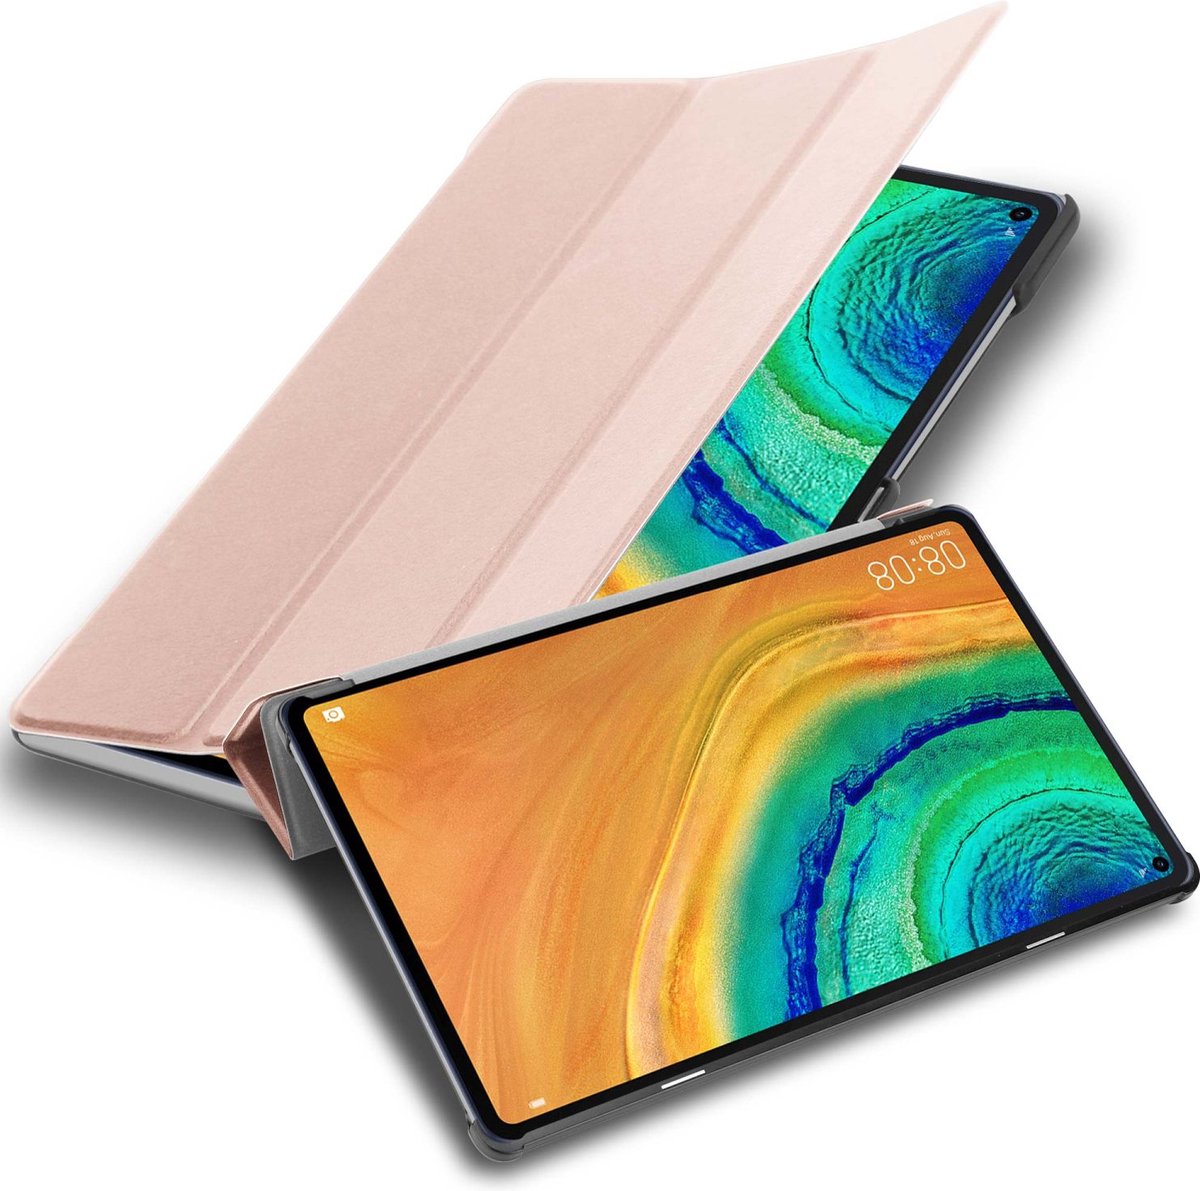 Cadorabo Tablet Hoesje voor Huawei MatePad PRO (10.8 inch) in PASTEL ROZE GOUD - Ultra dun beschermend geval met automatische Wake Up en Stand functie Book Case Cover Etui